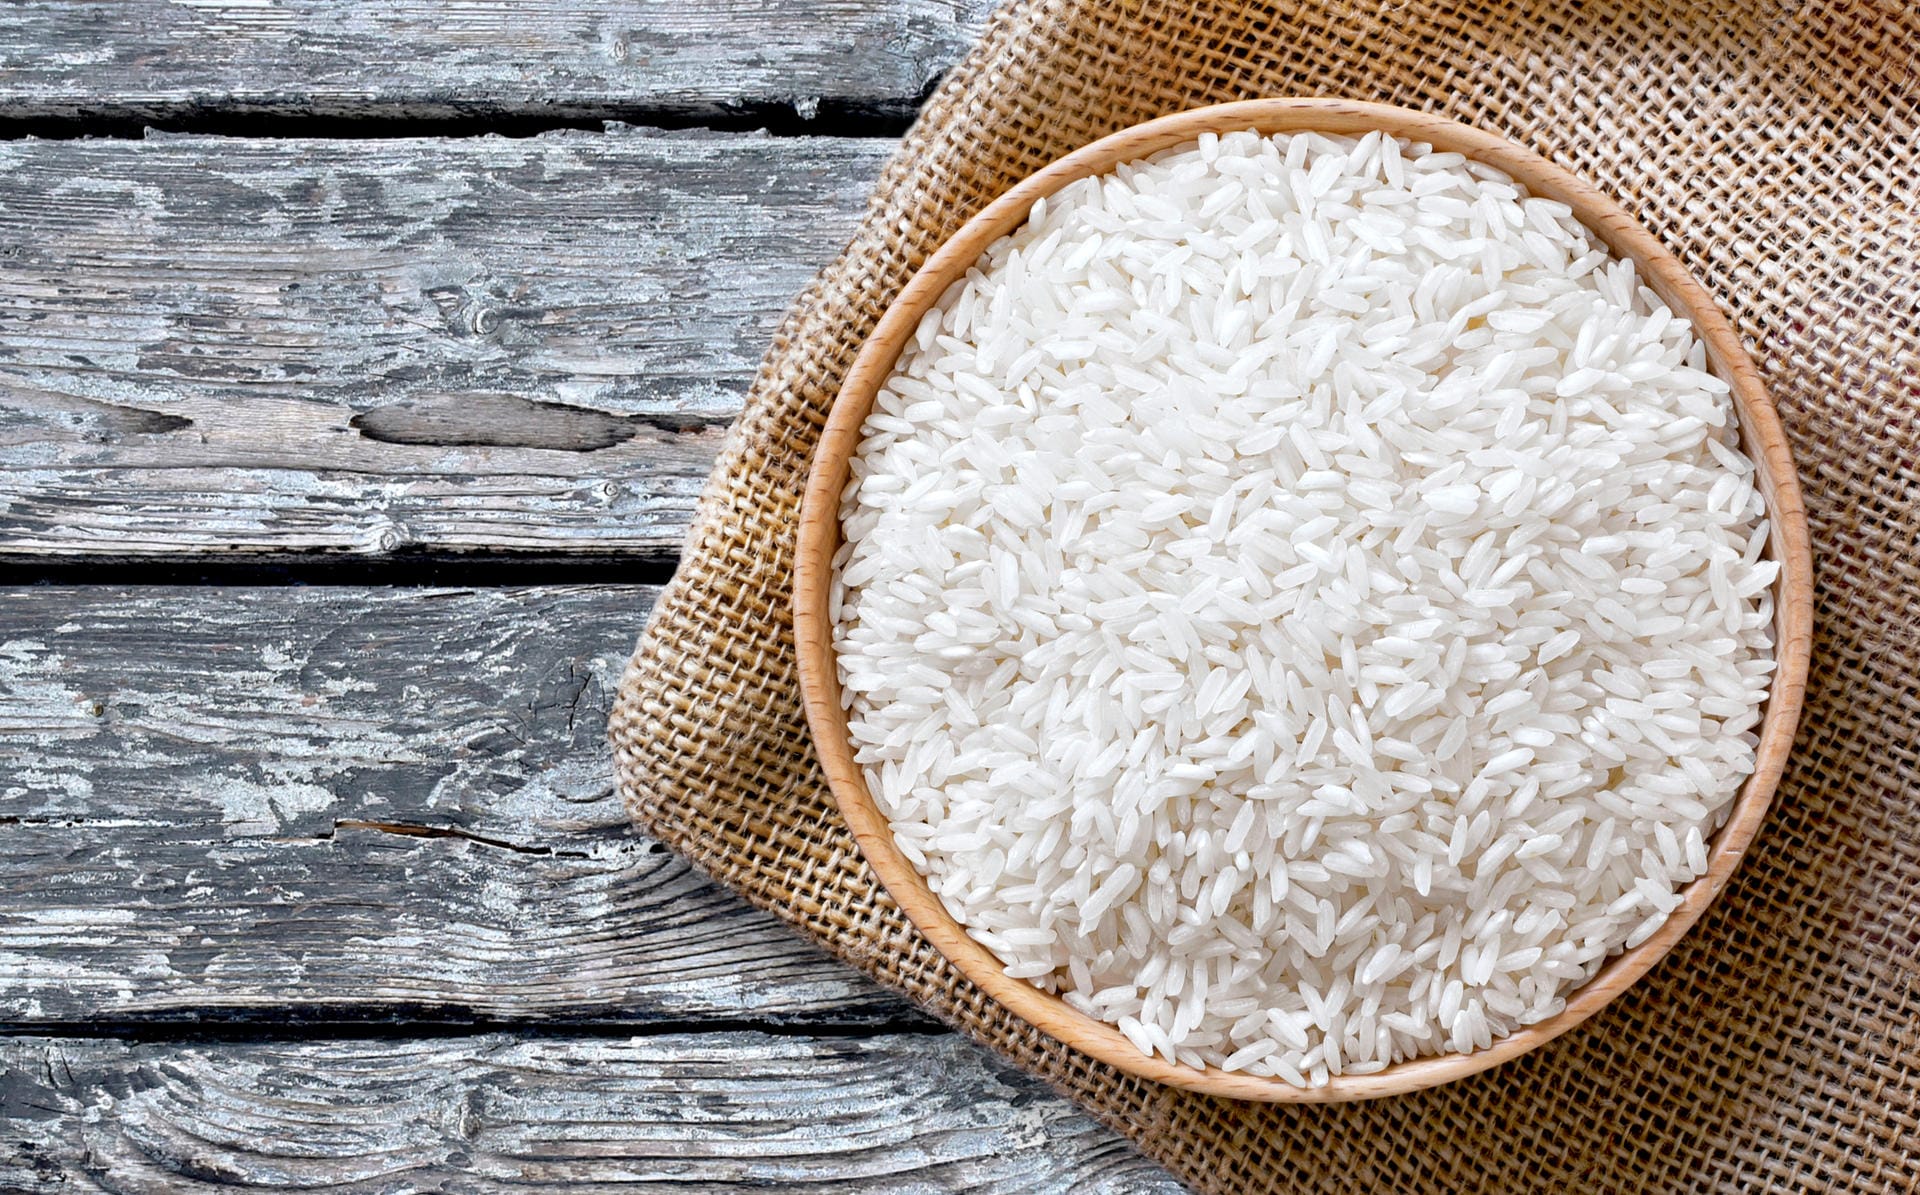 Weißer Reis erhöht das Diabetes-Risiko. Das belegt eine aktuelle Studie der Harvard School for Public Health. Von 350.000 untersuchten Personen erkrankten 13.000 an Diabetes. Das Risiko steigt vor allem in asiatischen Regionen, da hier bis zu vier Portionen Reis täglich gegessen werden.